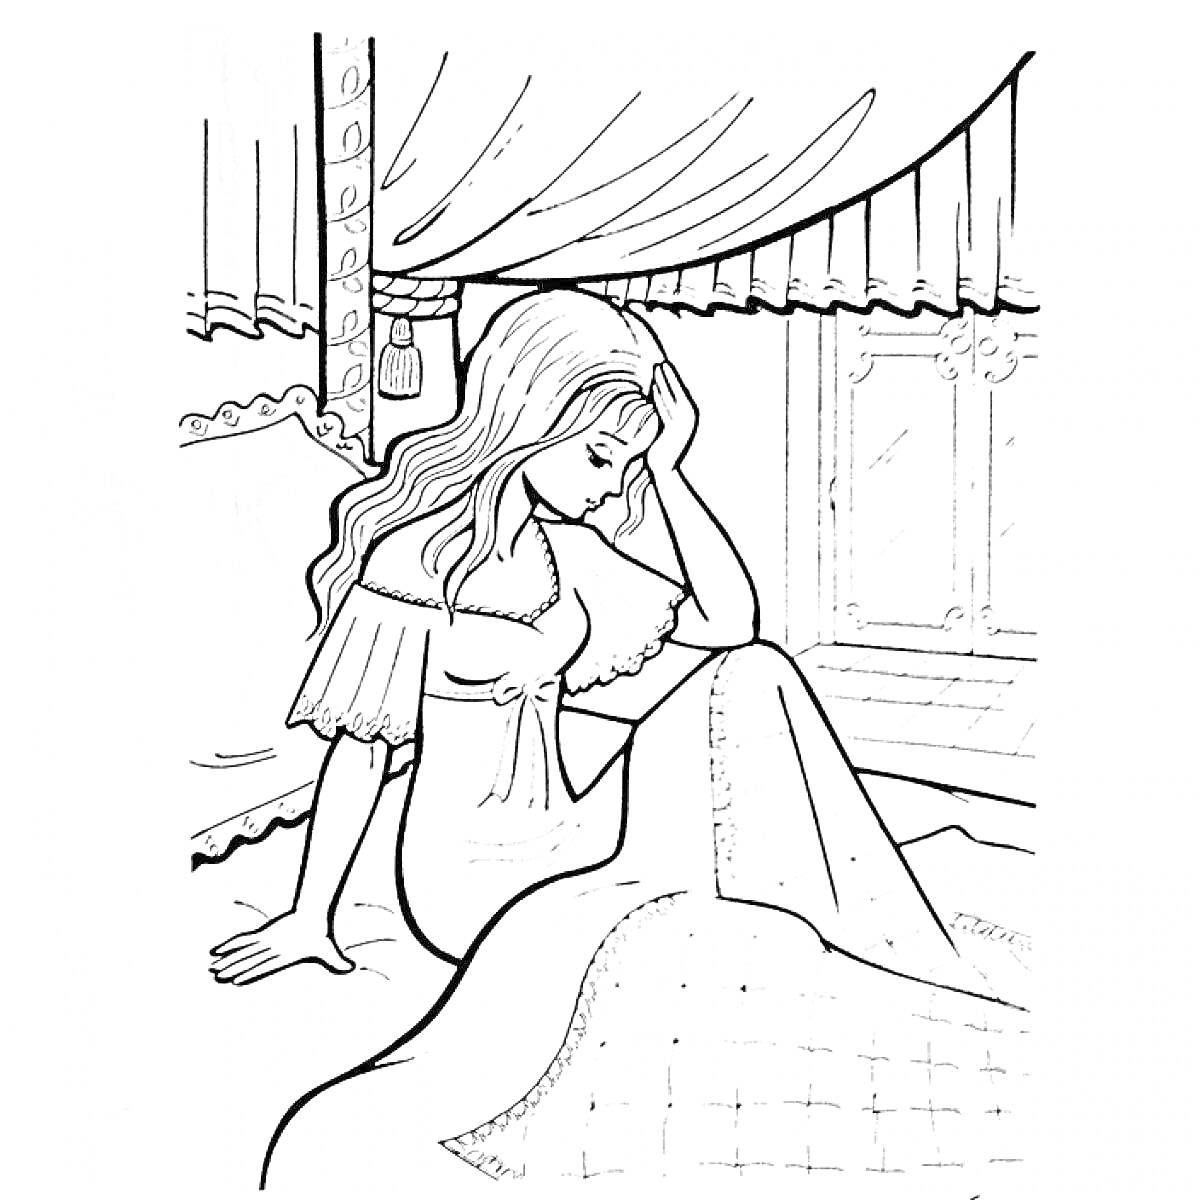 Принцесса на горошине сидит на постели, окружающая обстановка - кровать с балдахином, занавески, окно